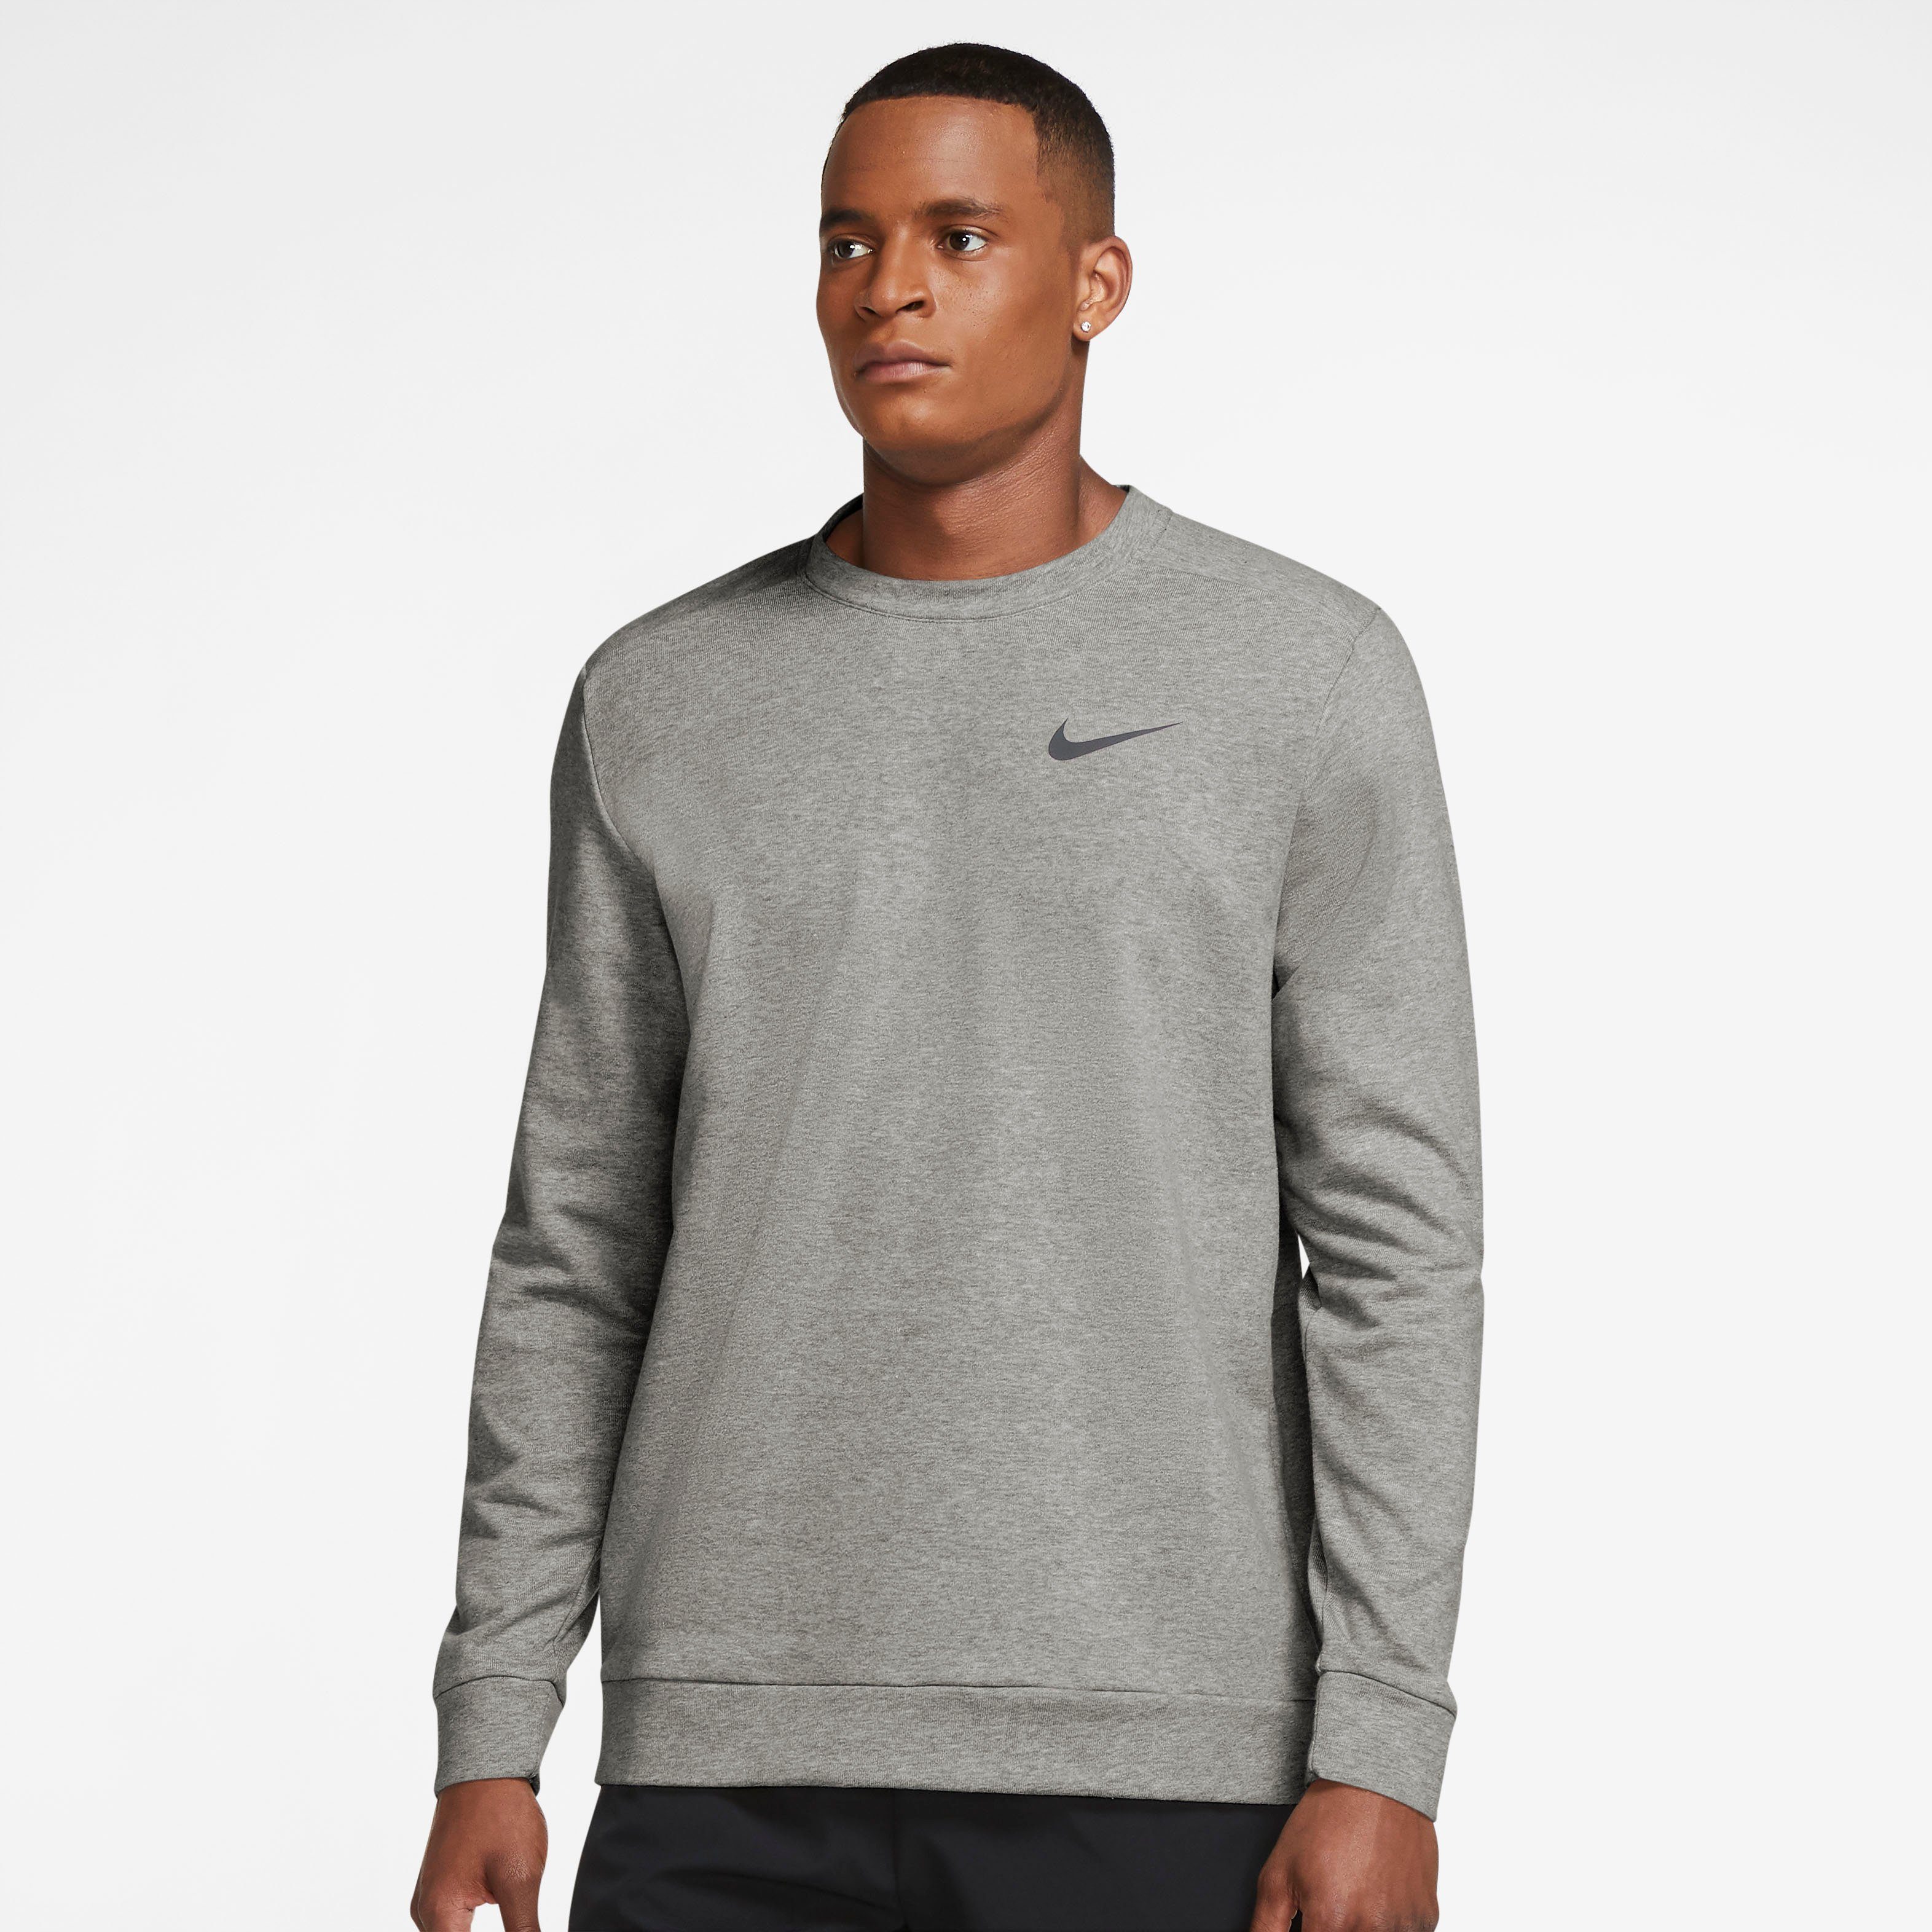 Günstige Nike Herren Shirts online kaufen | OTTO